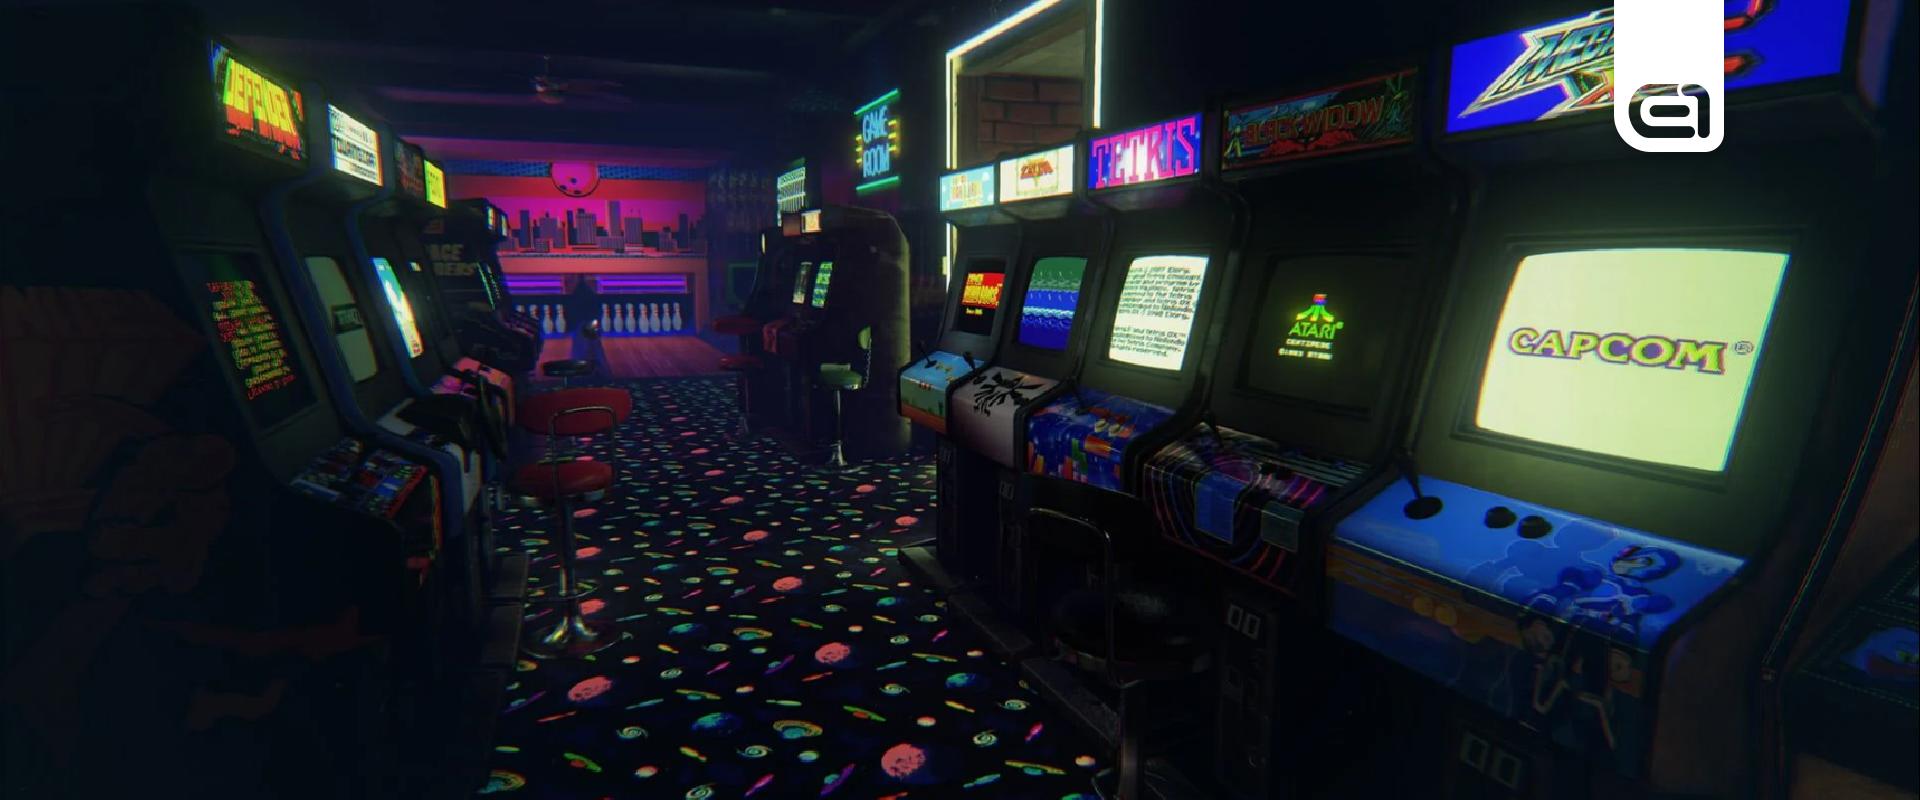 Botrányok, mérföldkövek és újdonságok – Gaming a 90-es évek elején